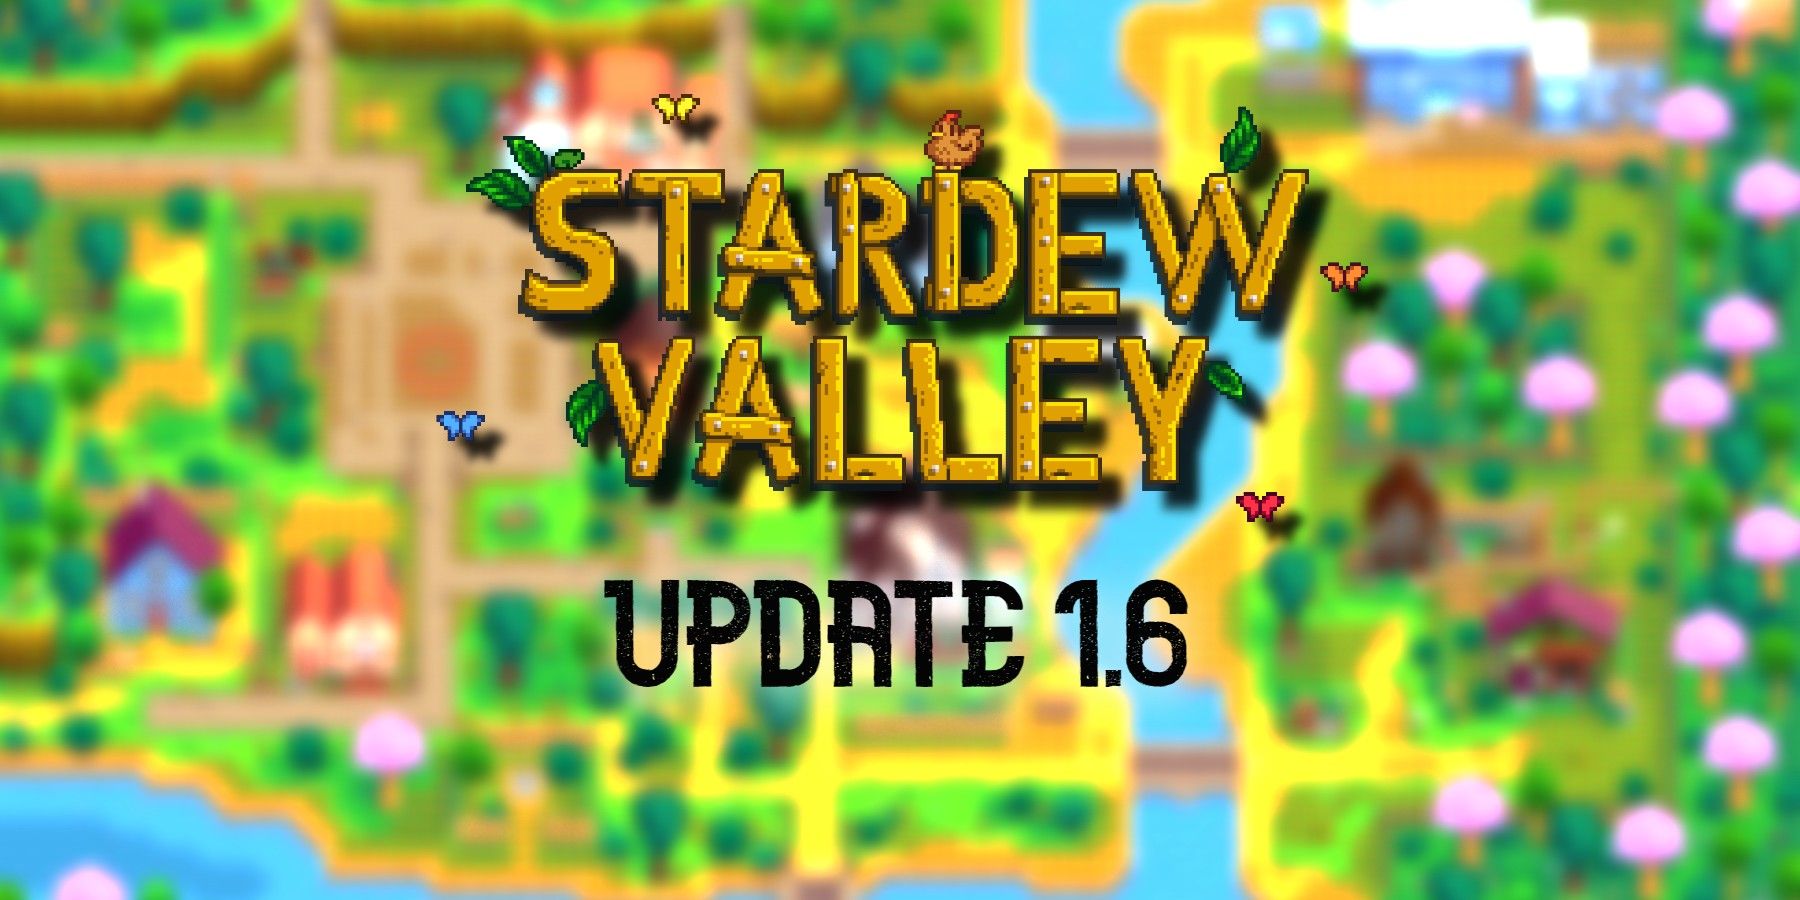 stardew-valley-update16-logo